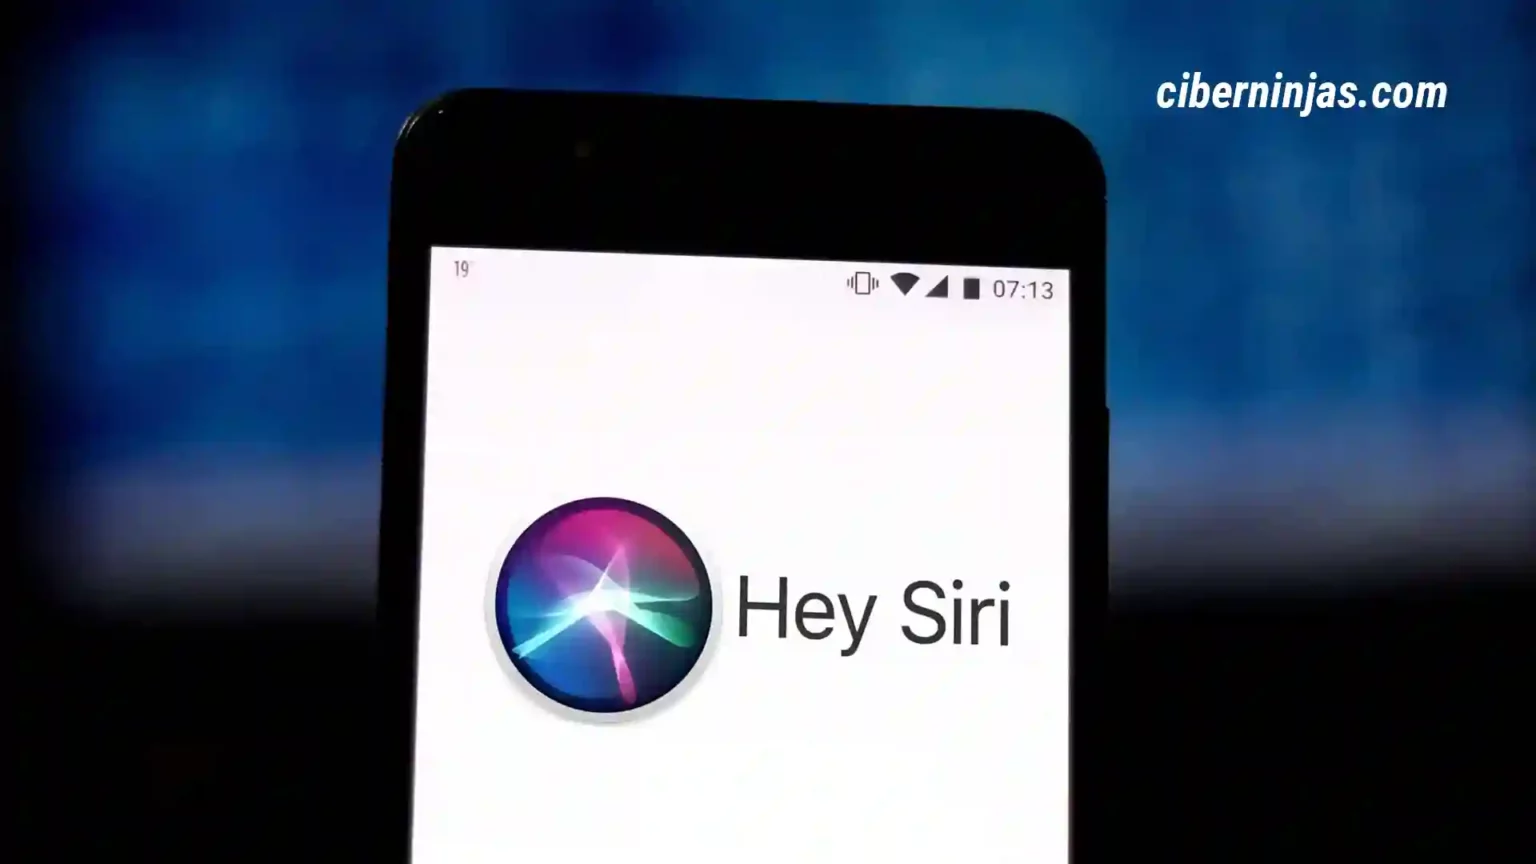 Apple cambiará el comando Hey Siri, conoce todo sobre su actualización aquí